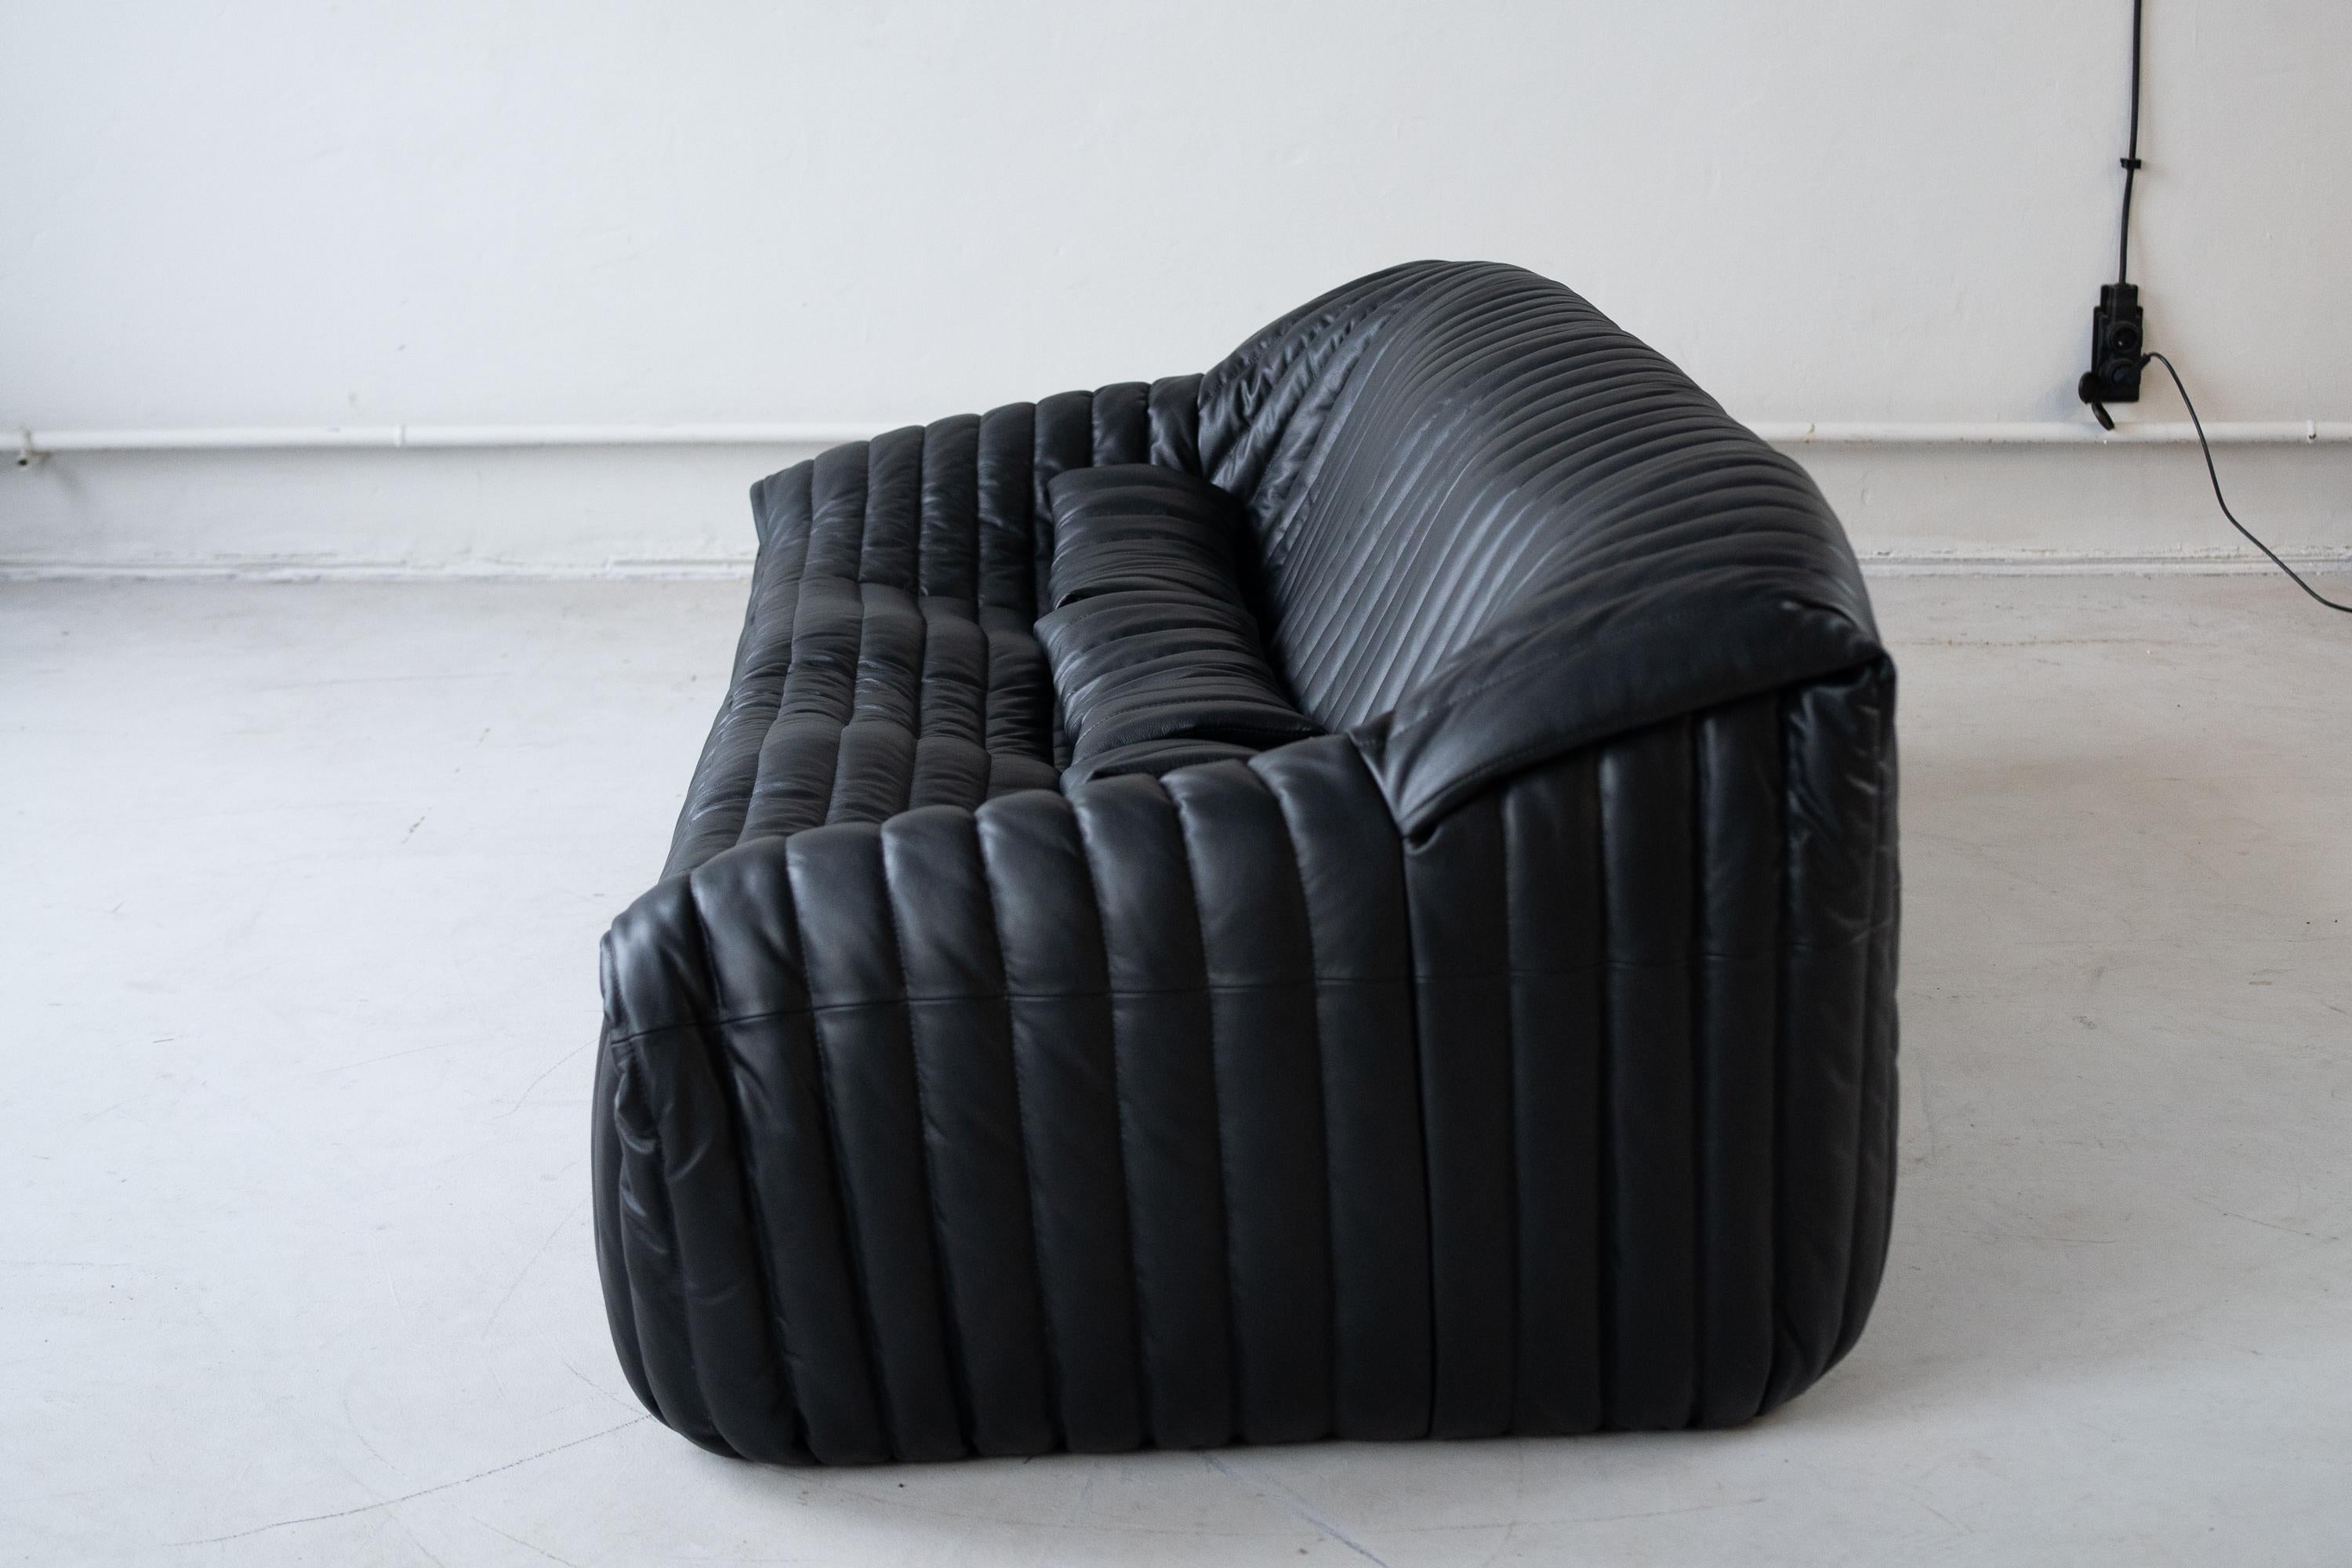  Sandra sofa  designed by Annie Hiéronimus for Cinna  In Good Condition For Sale In Porto, Porto